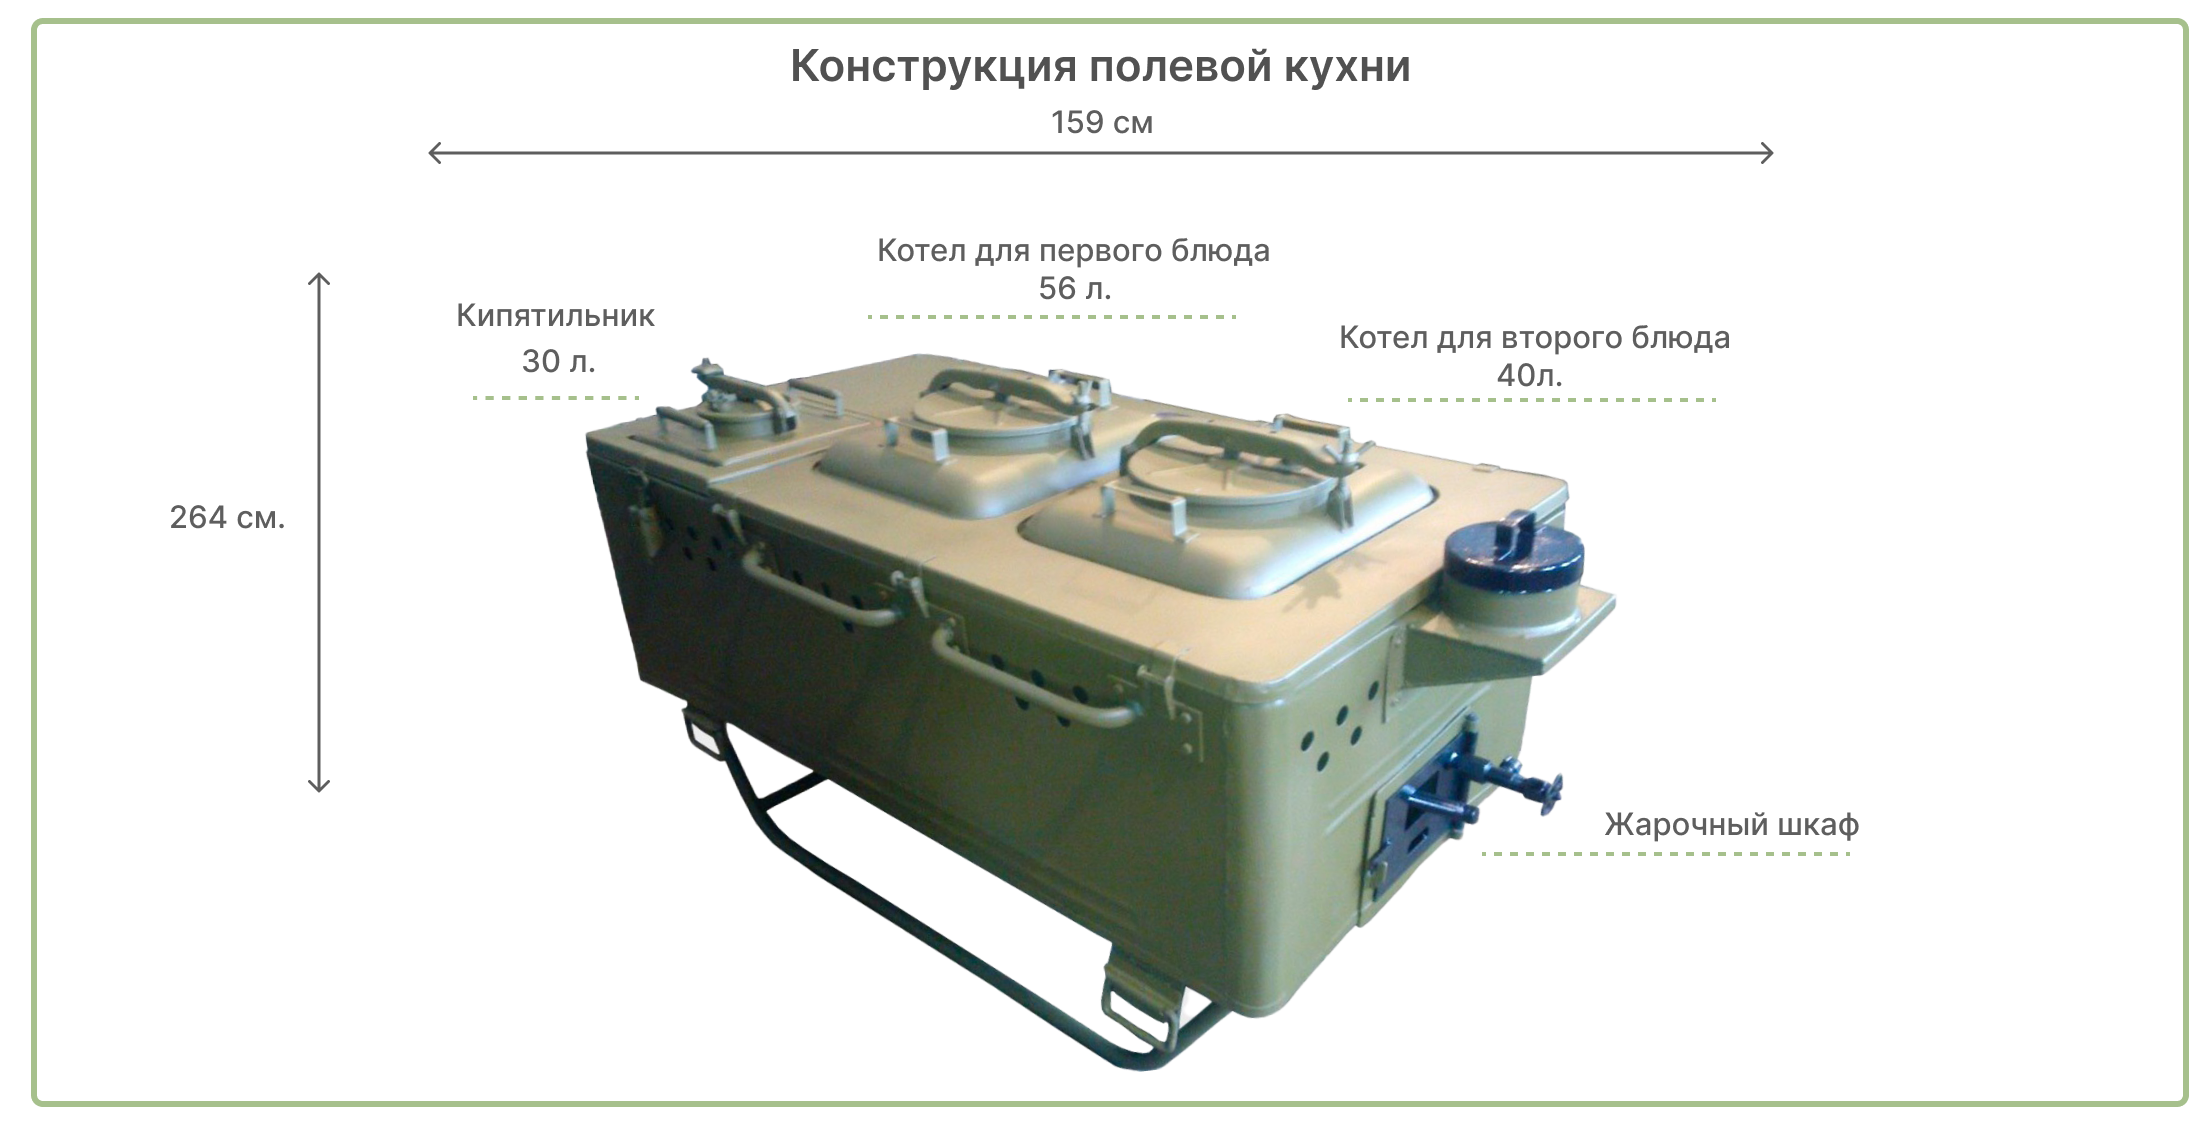 купить кухню армейскую полевую в Москве и СПб